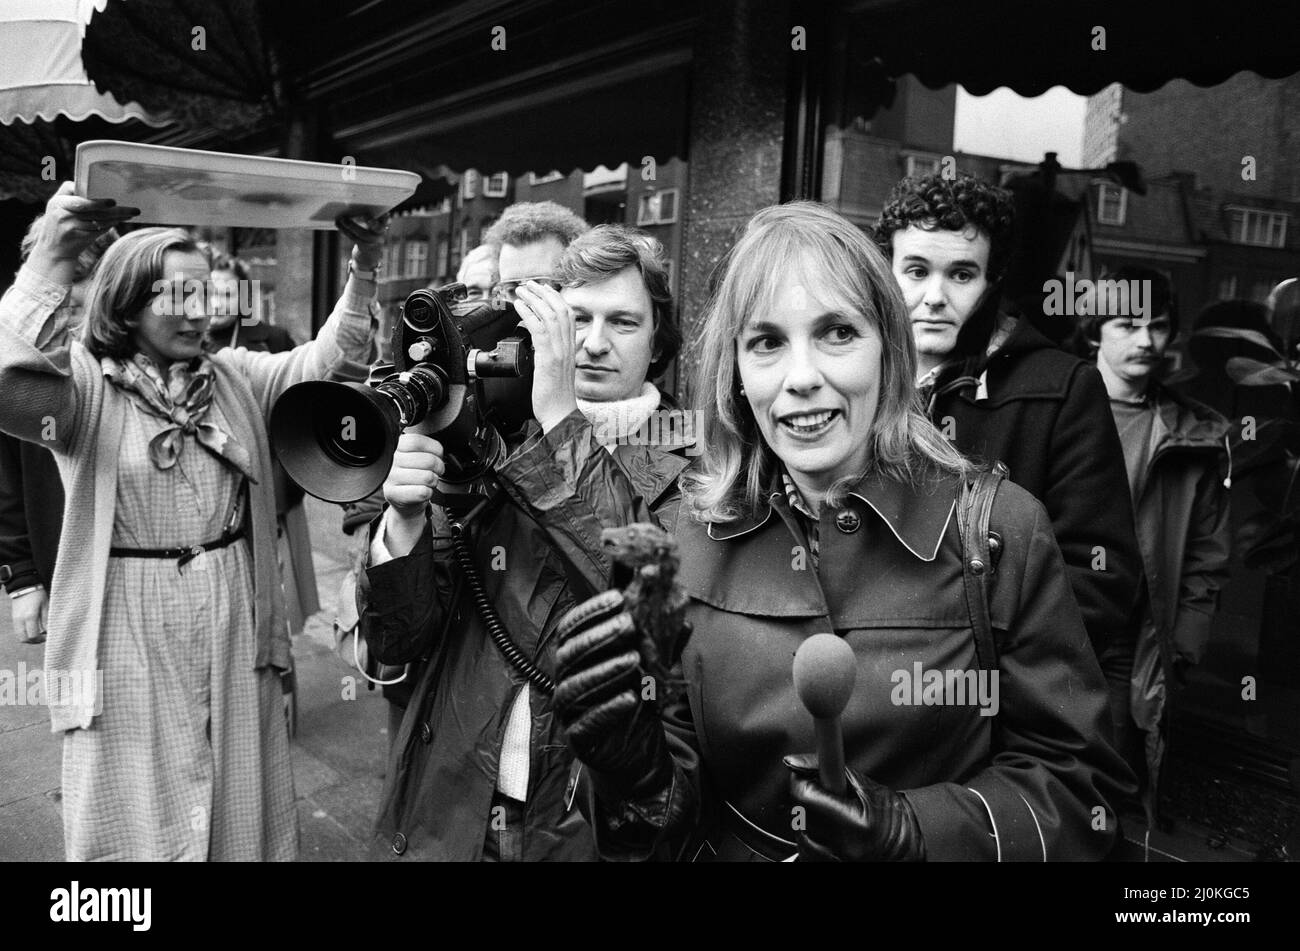 Esther Rantzen, la star de télévision « c'est la vie », a photographié en demandant aux passants de goûter « Bat Soup ». Elle a été arrêtée plus tard dans la journée pour obstruction volontaire. 16th octobre 1980. Banque D'Images